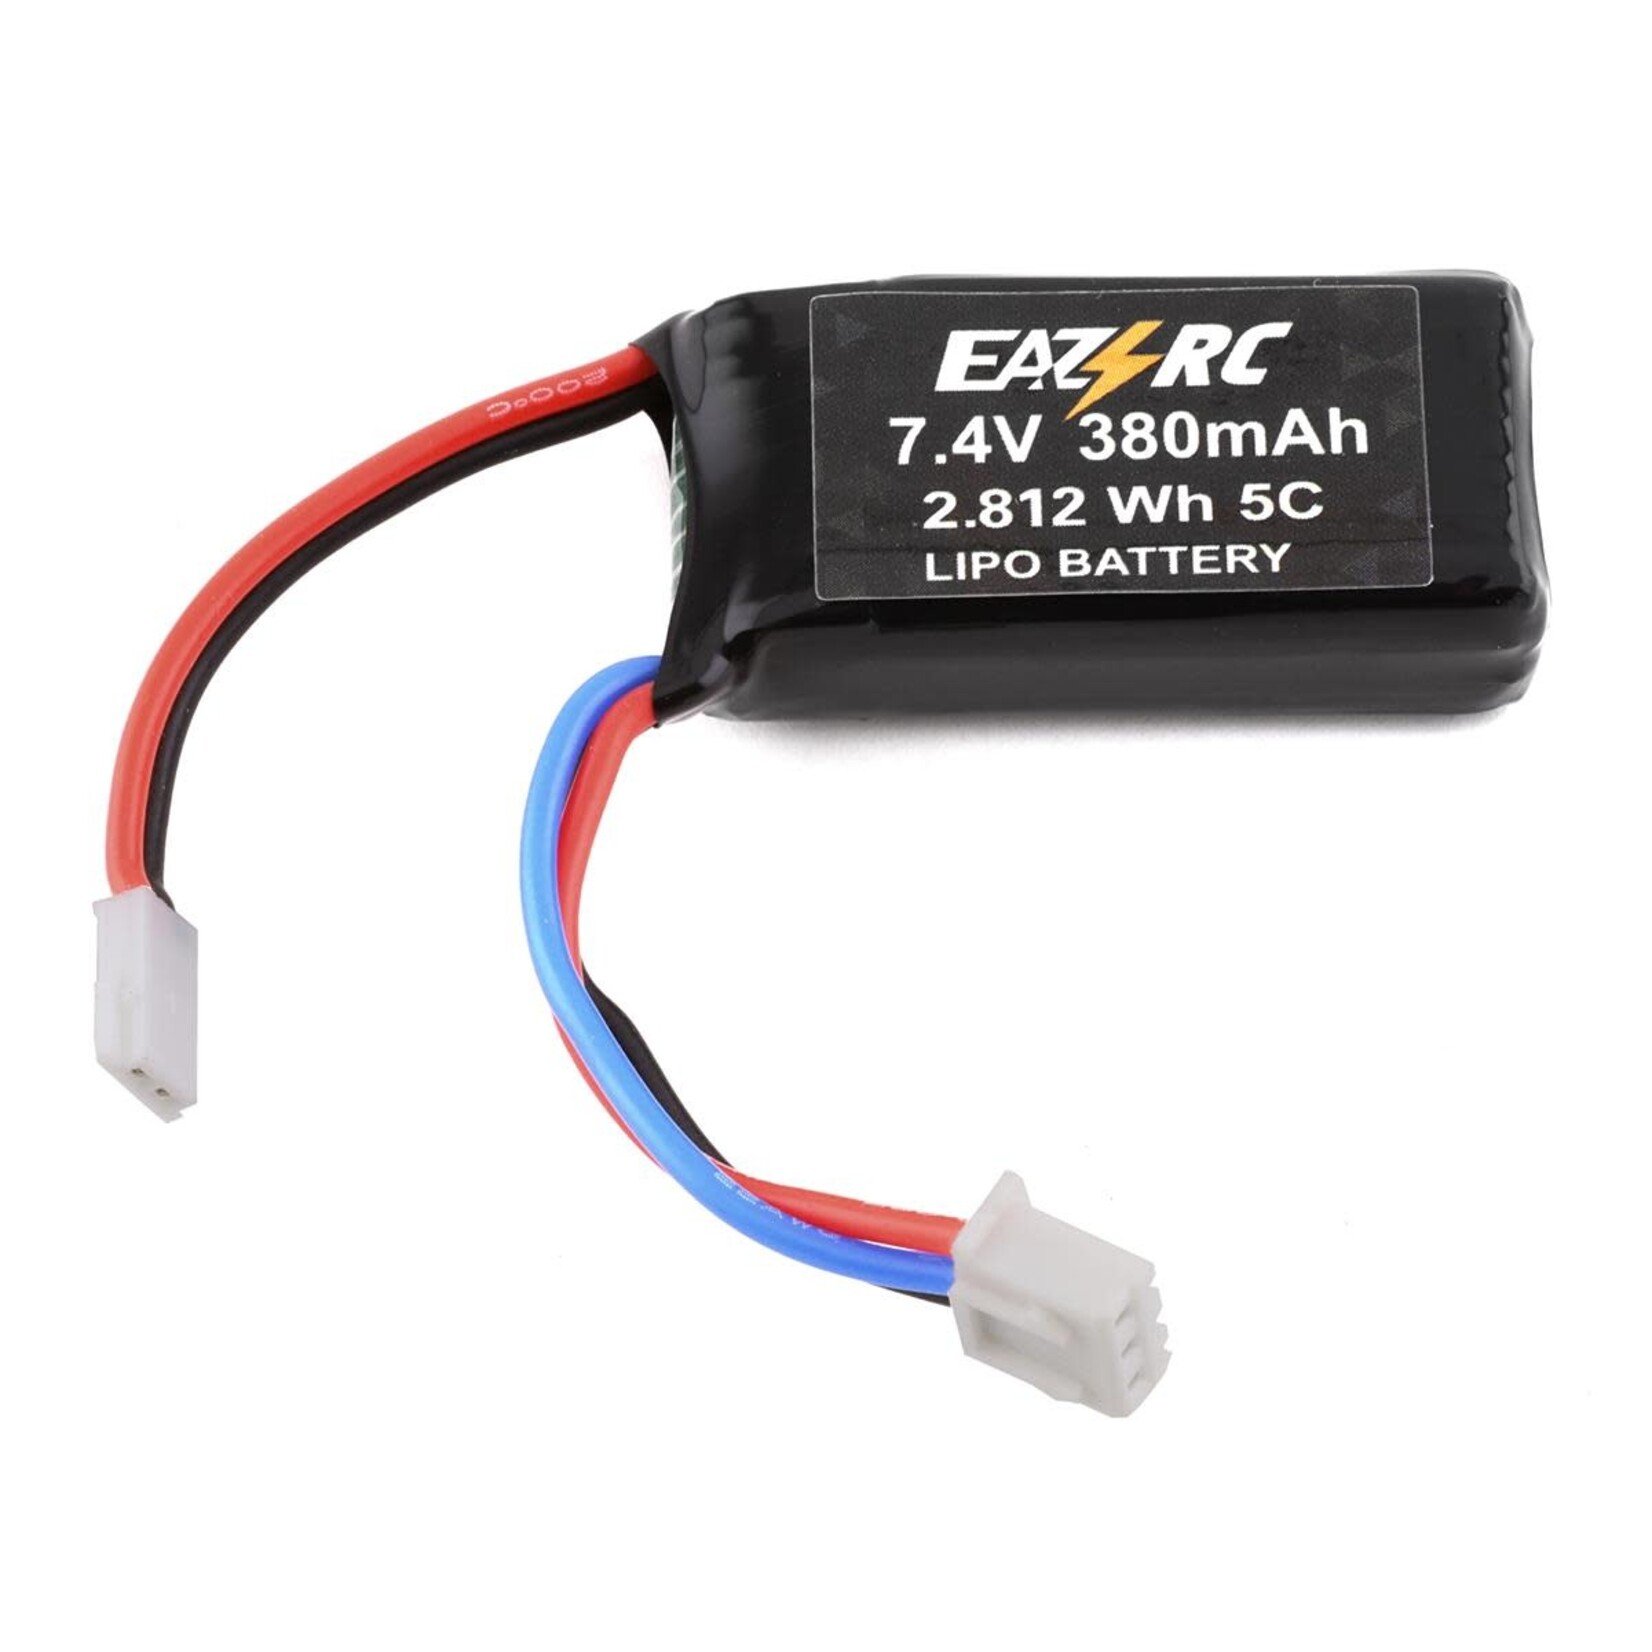 Eazy RC Eazy RC 2S LiPo Battery (7.4V/380mAh) #E1014